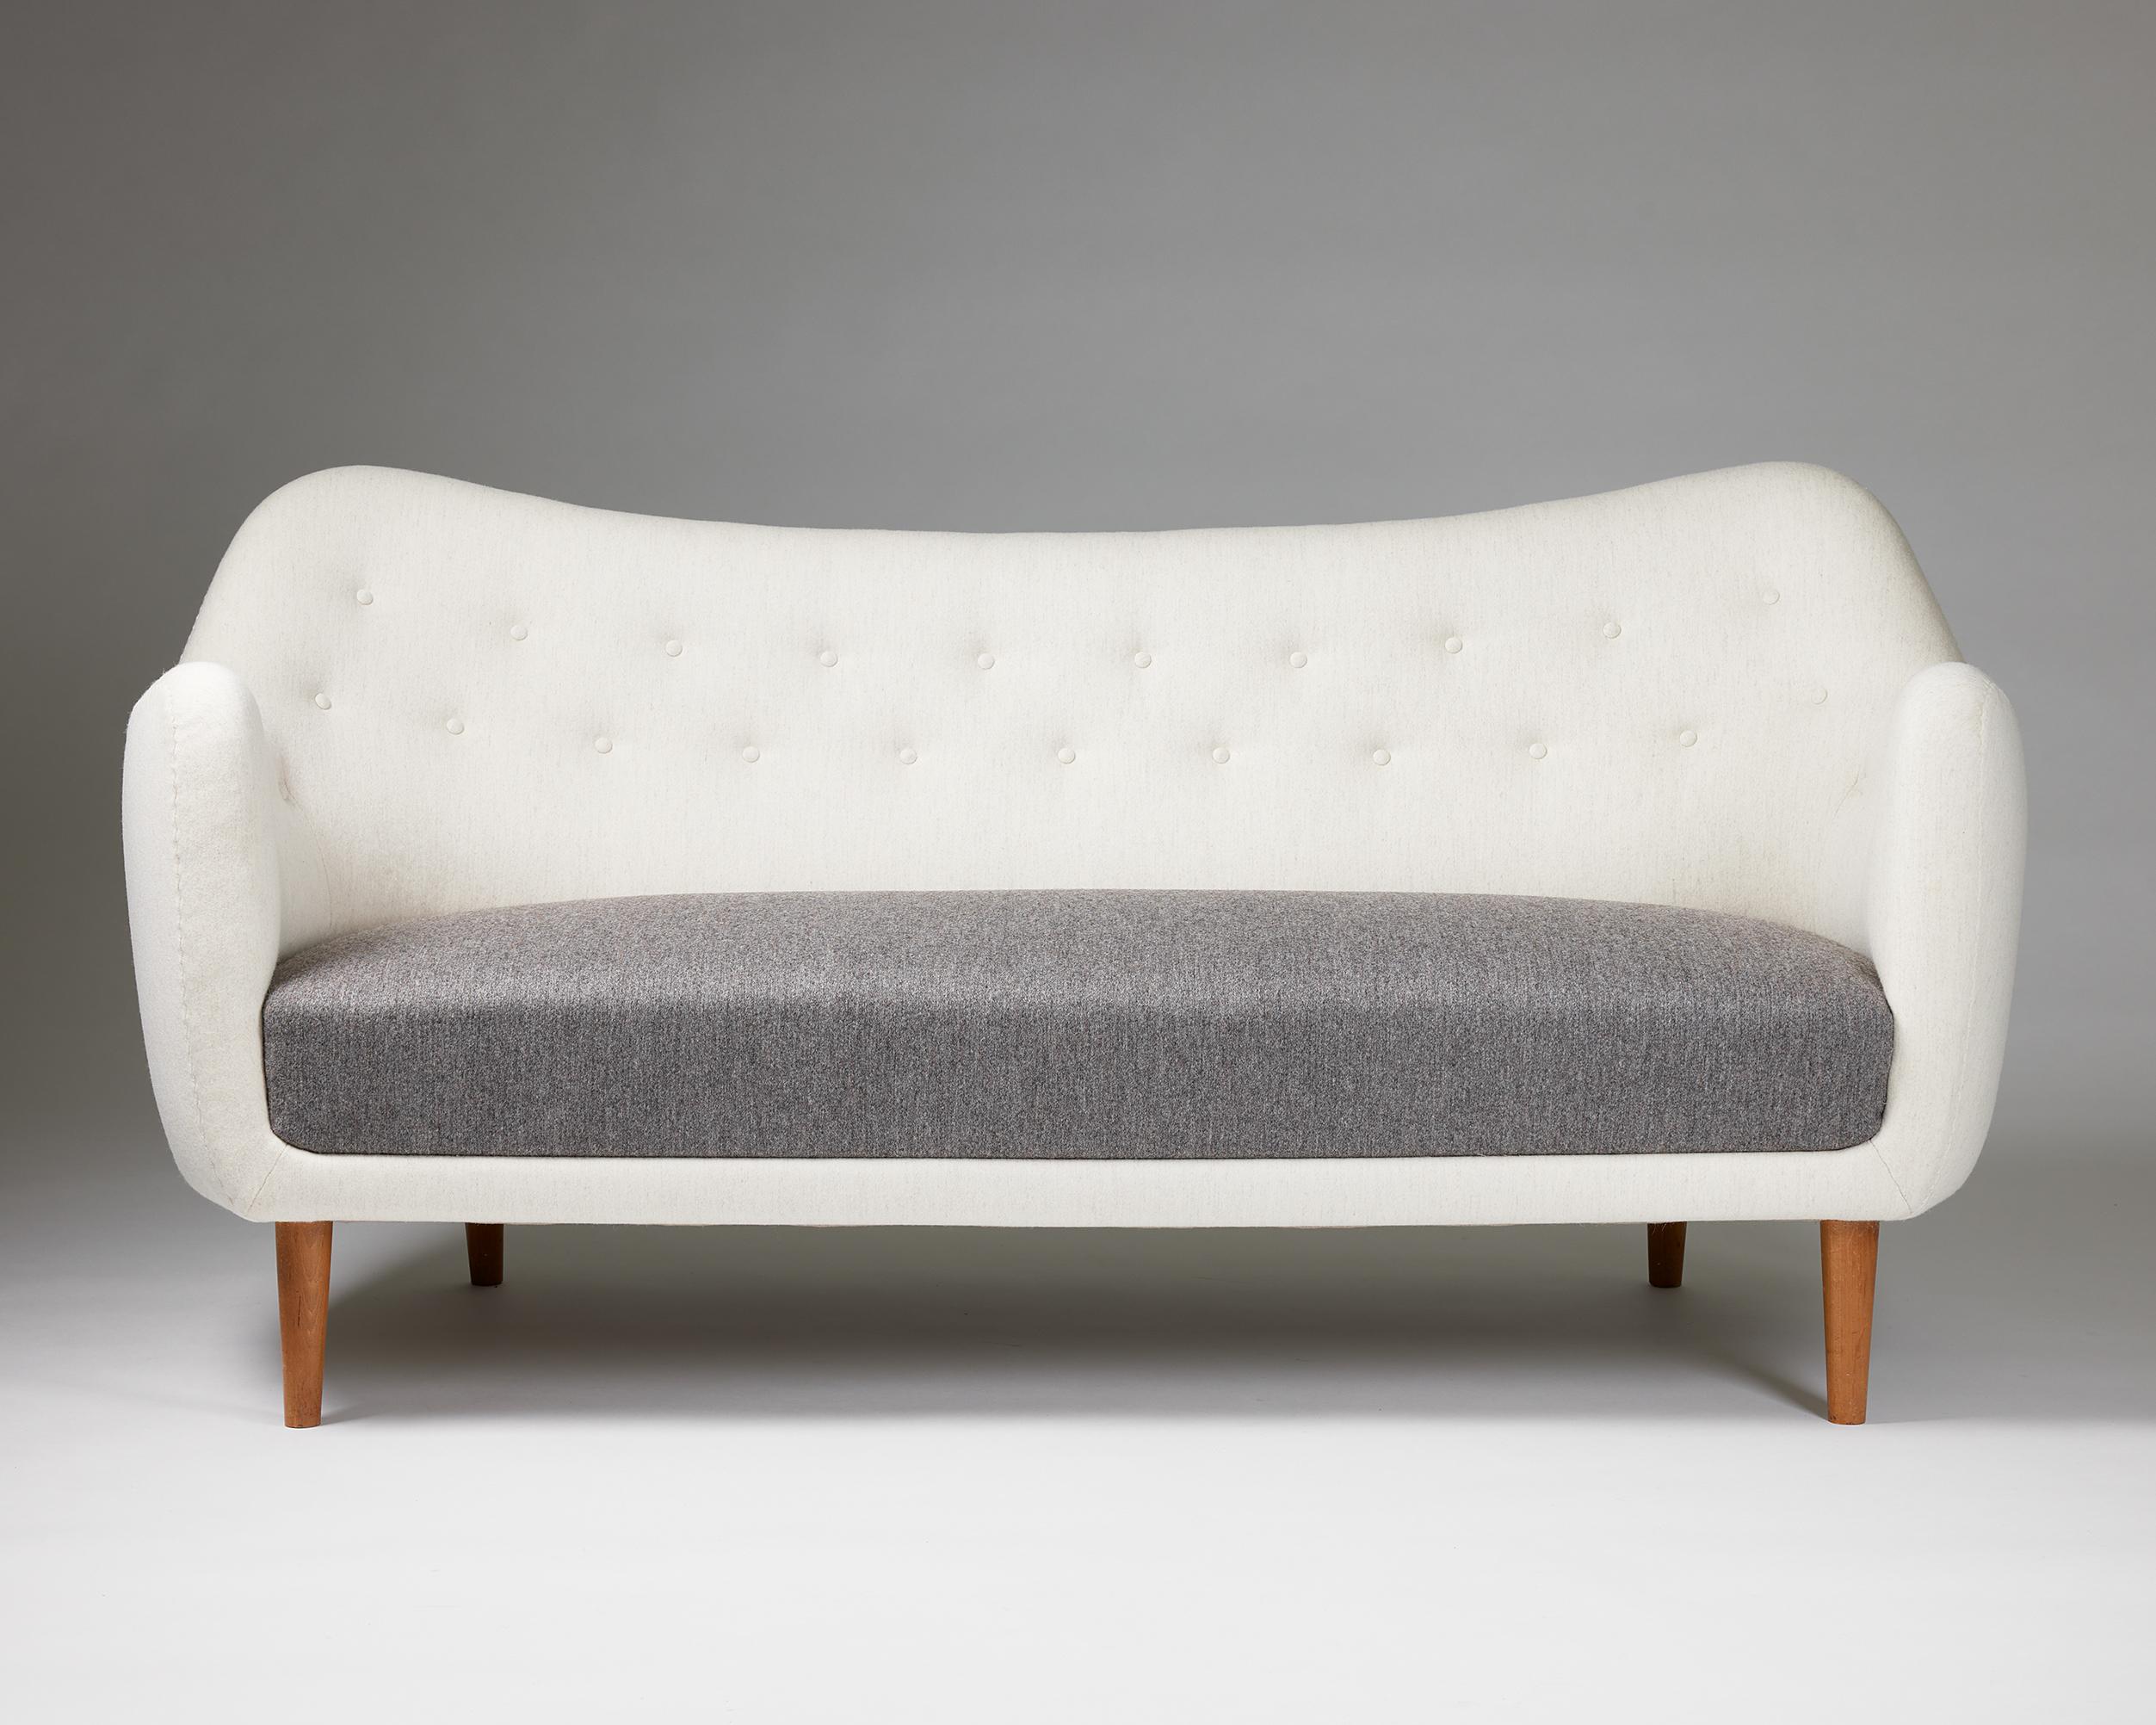 Mid-Century Modern Sofa Bo64 Designed by Finn Juhl for Bovirke, Denmark, 1940s For Sale